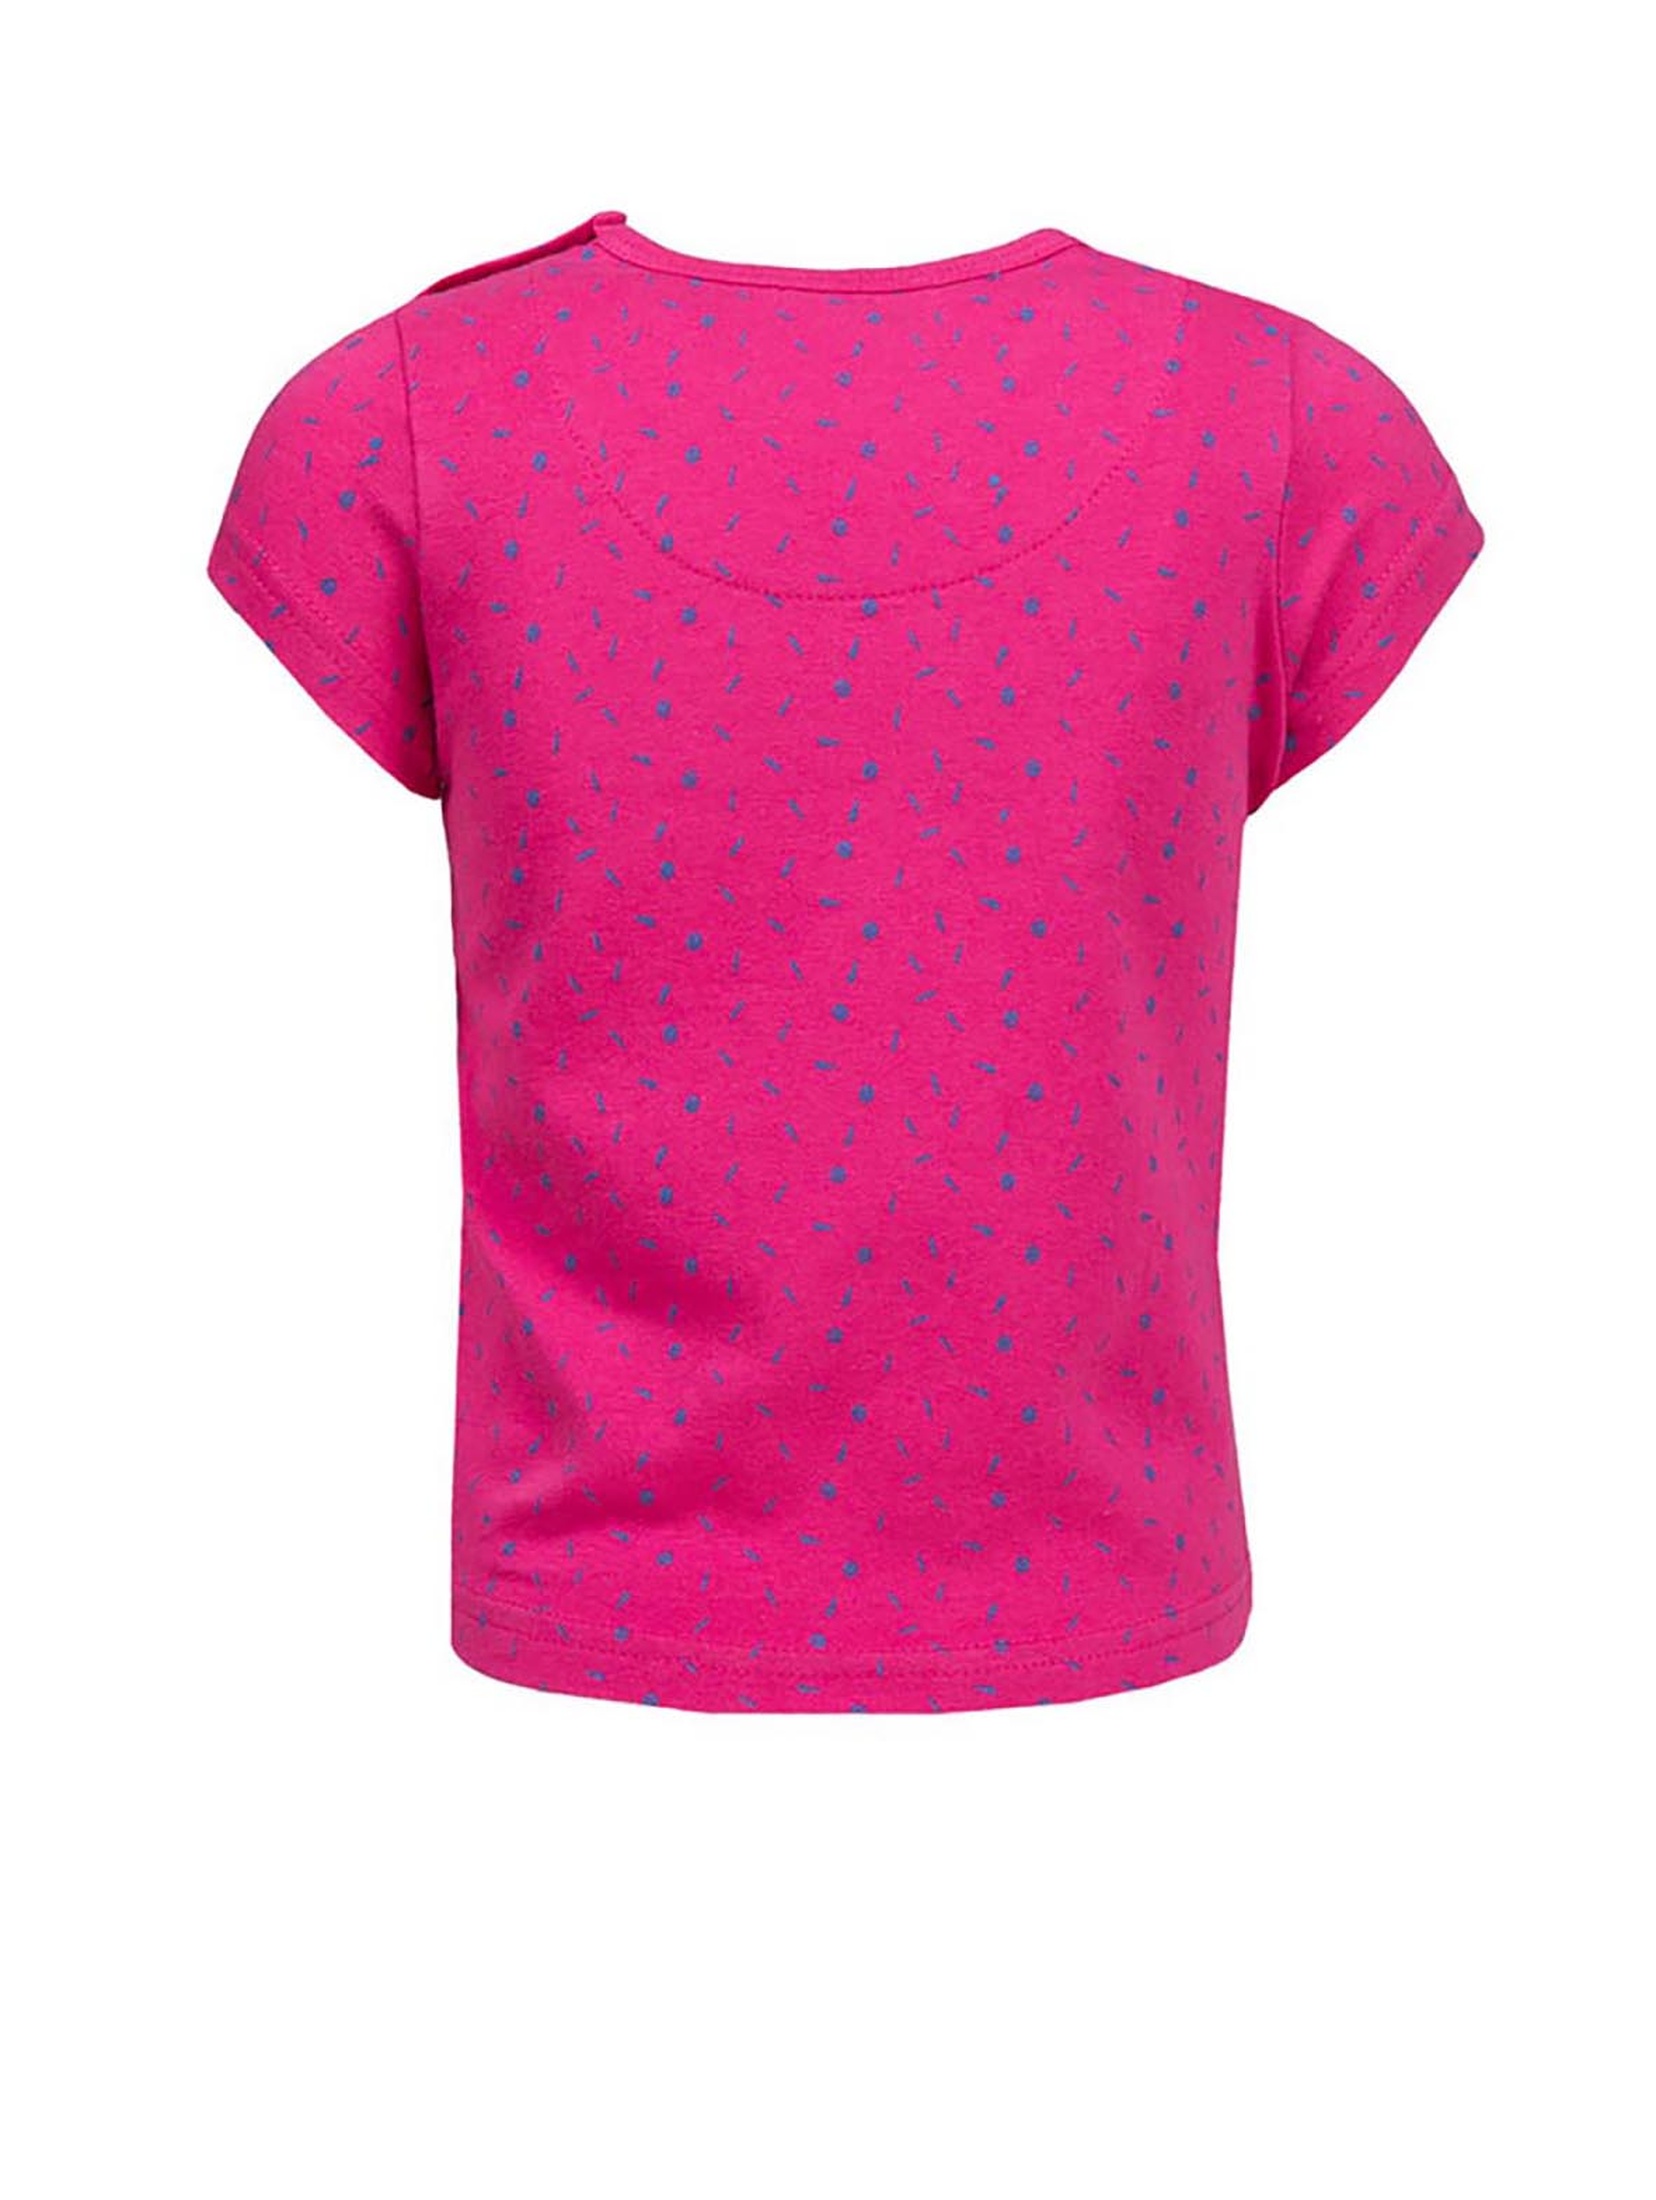 T-shirt dziewczęcy, różowy, Oh snap!, Lief